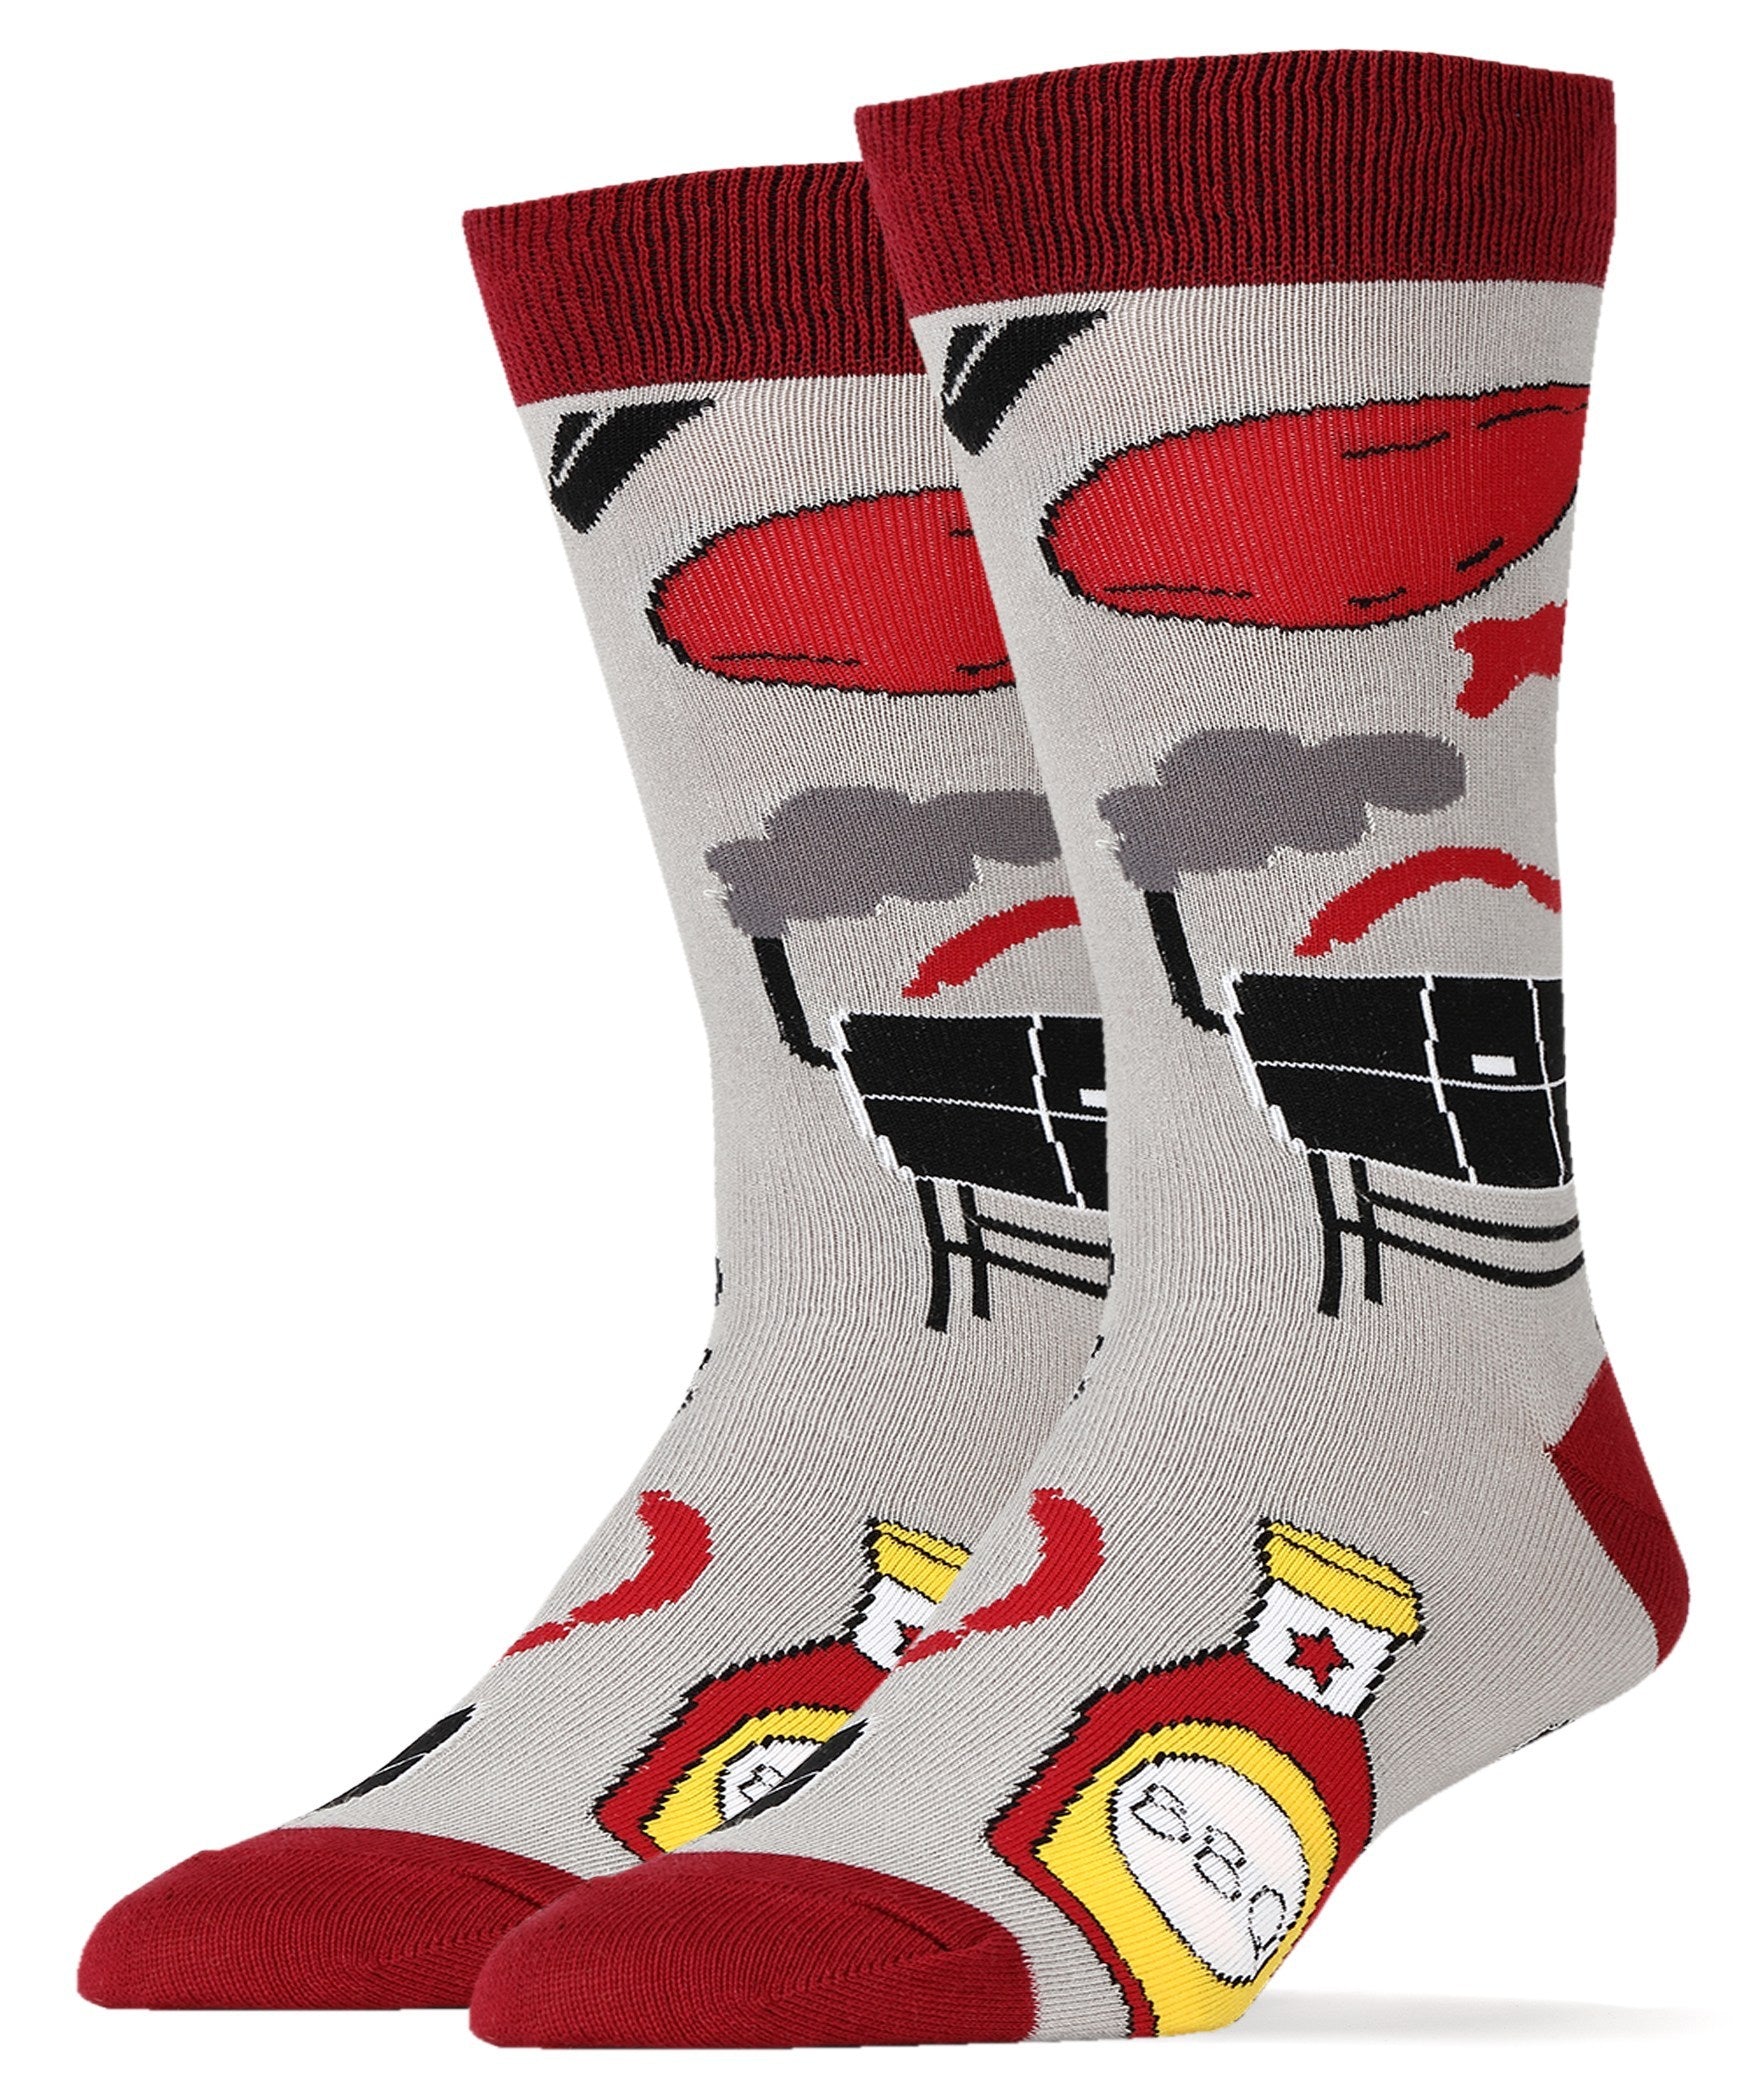 Seasonal Socks & Slippers | Year Round | Oooh Yeah! Socks